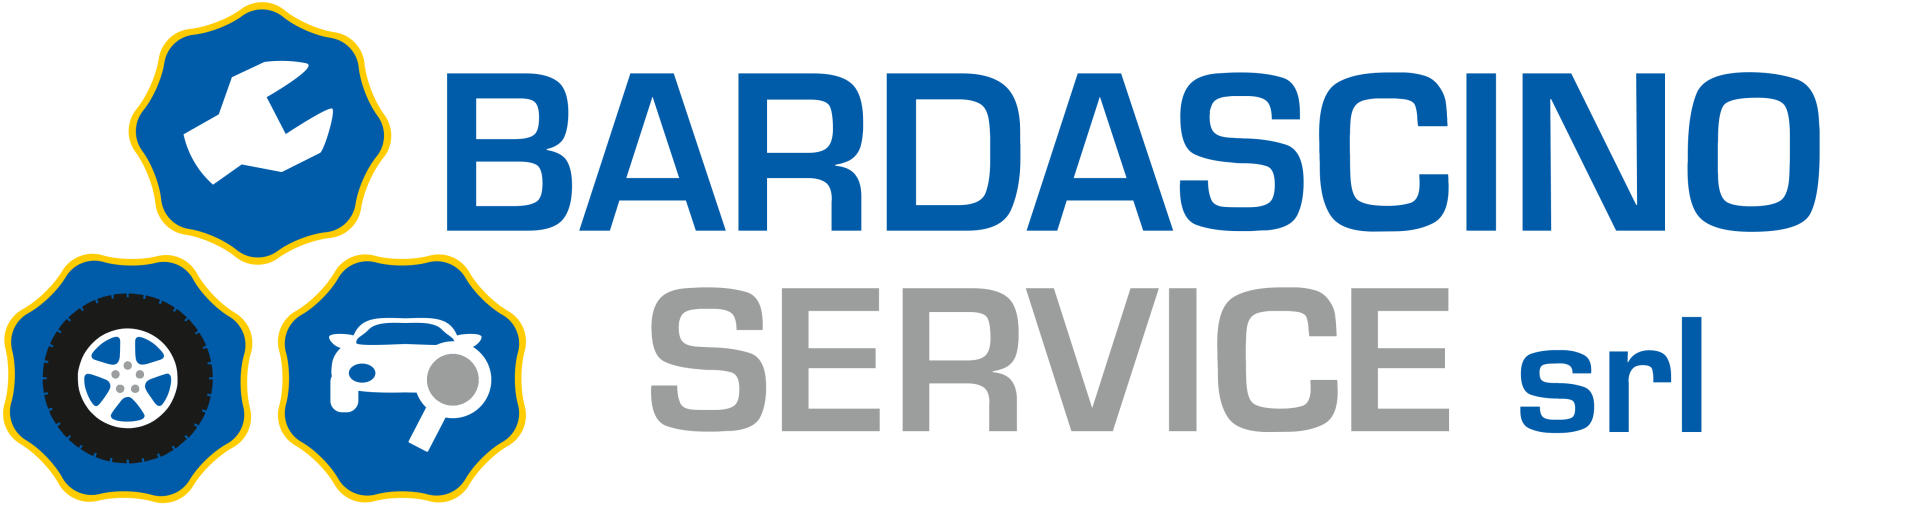 Bardascino-Service-Logo